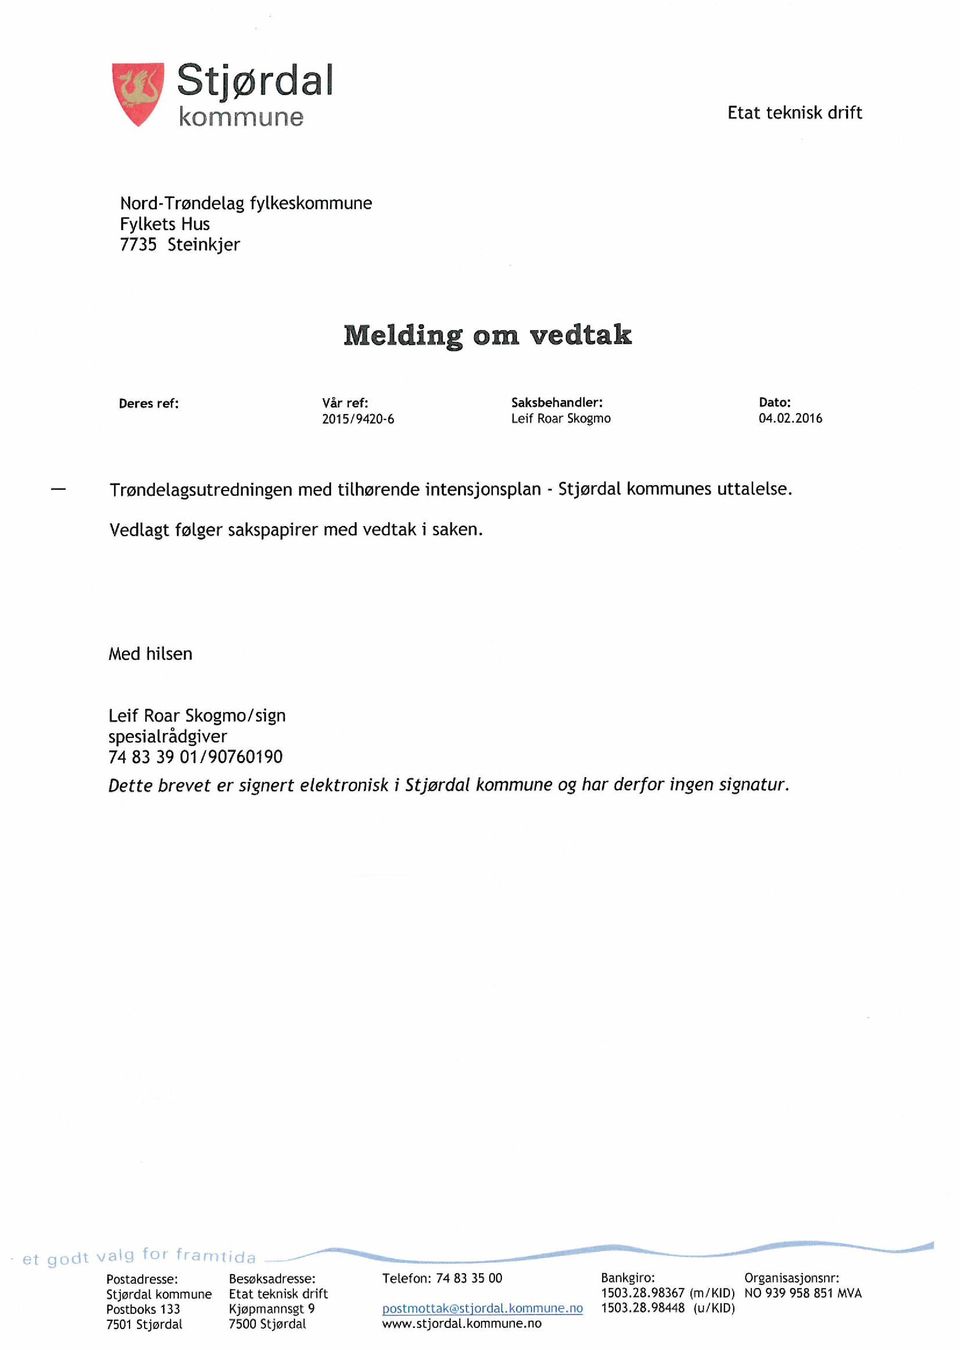 Med hilsen Leif Roar Skogmo/sign spesialrådgiver 74 83 39 01/90760190 Dette brevet er signert elektronisk i Stjørdal kommune og har derfor ingen signatur.